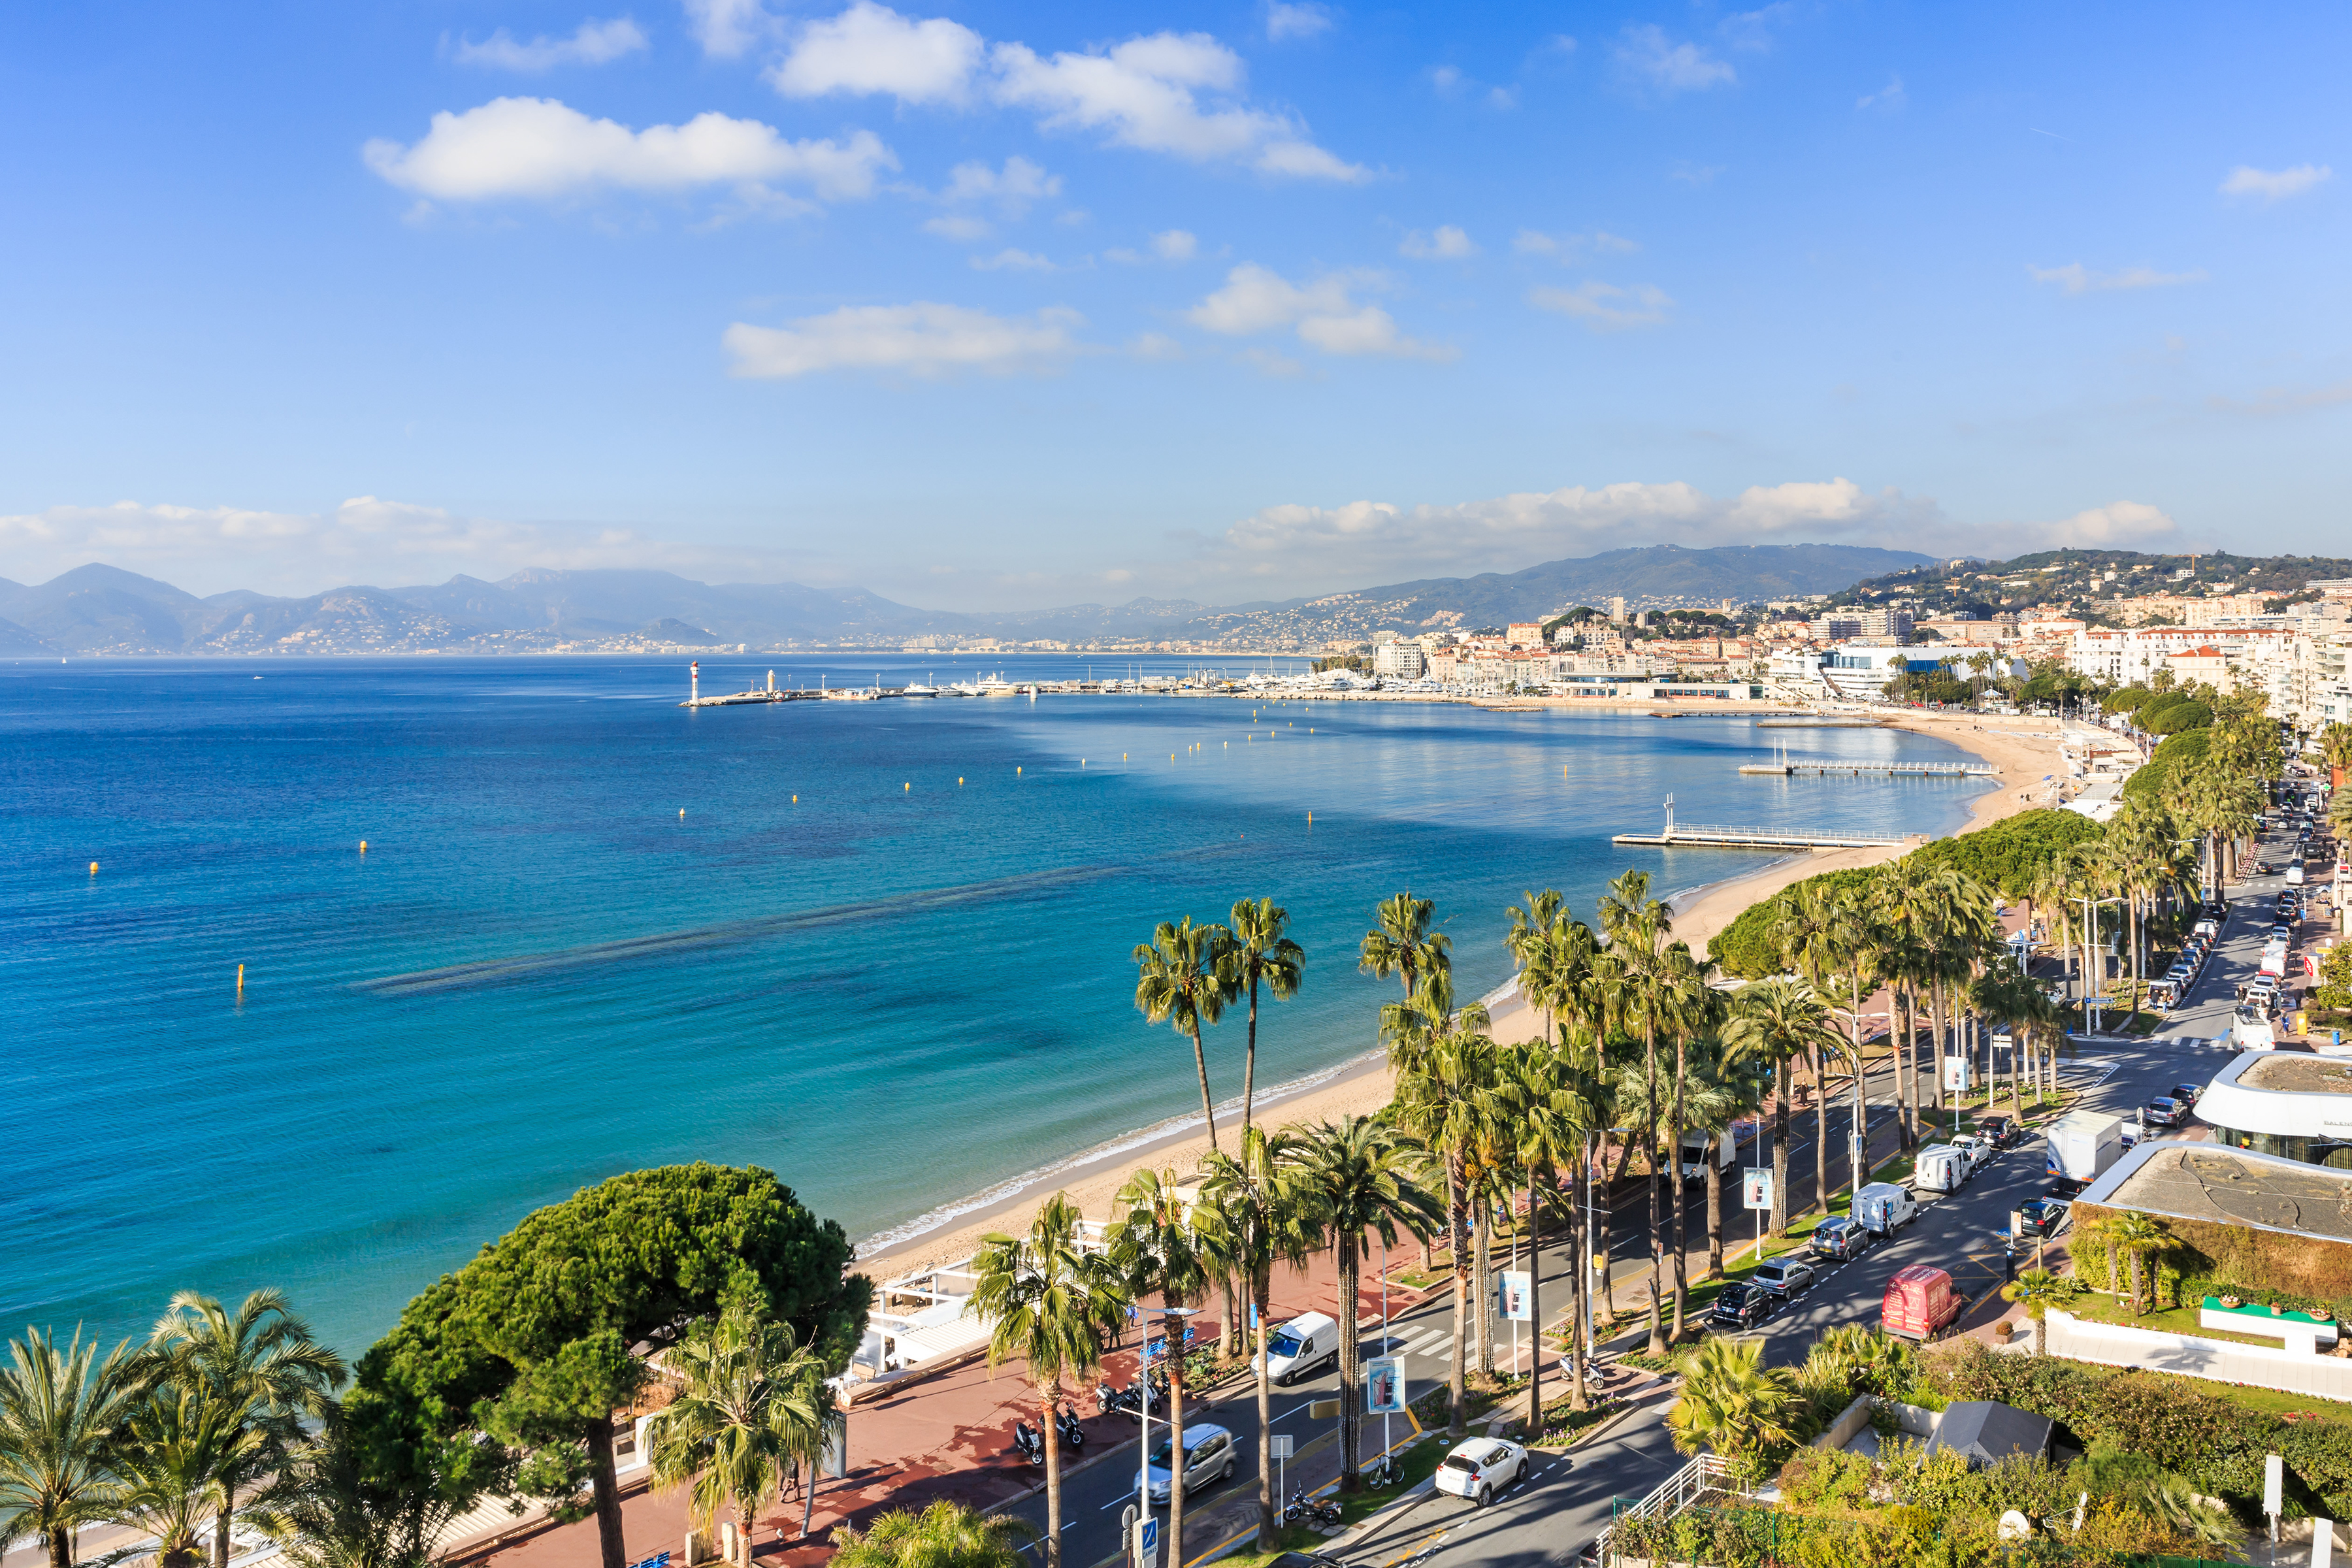 Le Palais des Festivals Cannes